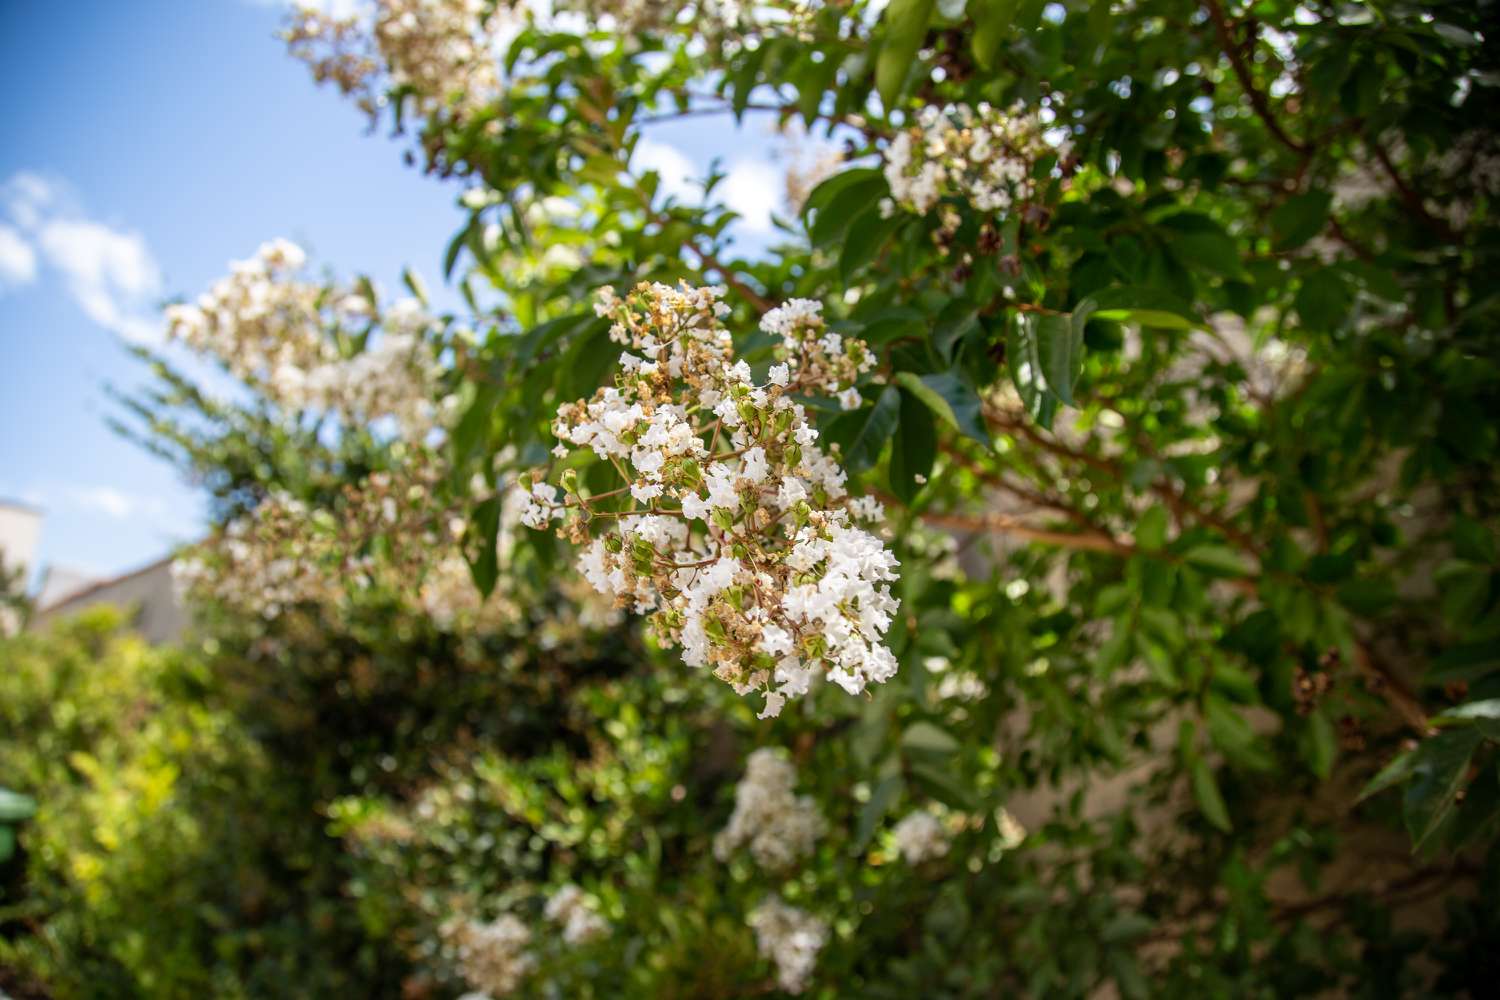 Duftender Tee-Olivenbaum mit winzigen weißen Blütenbüscheln und Knospen am Zweig